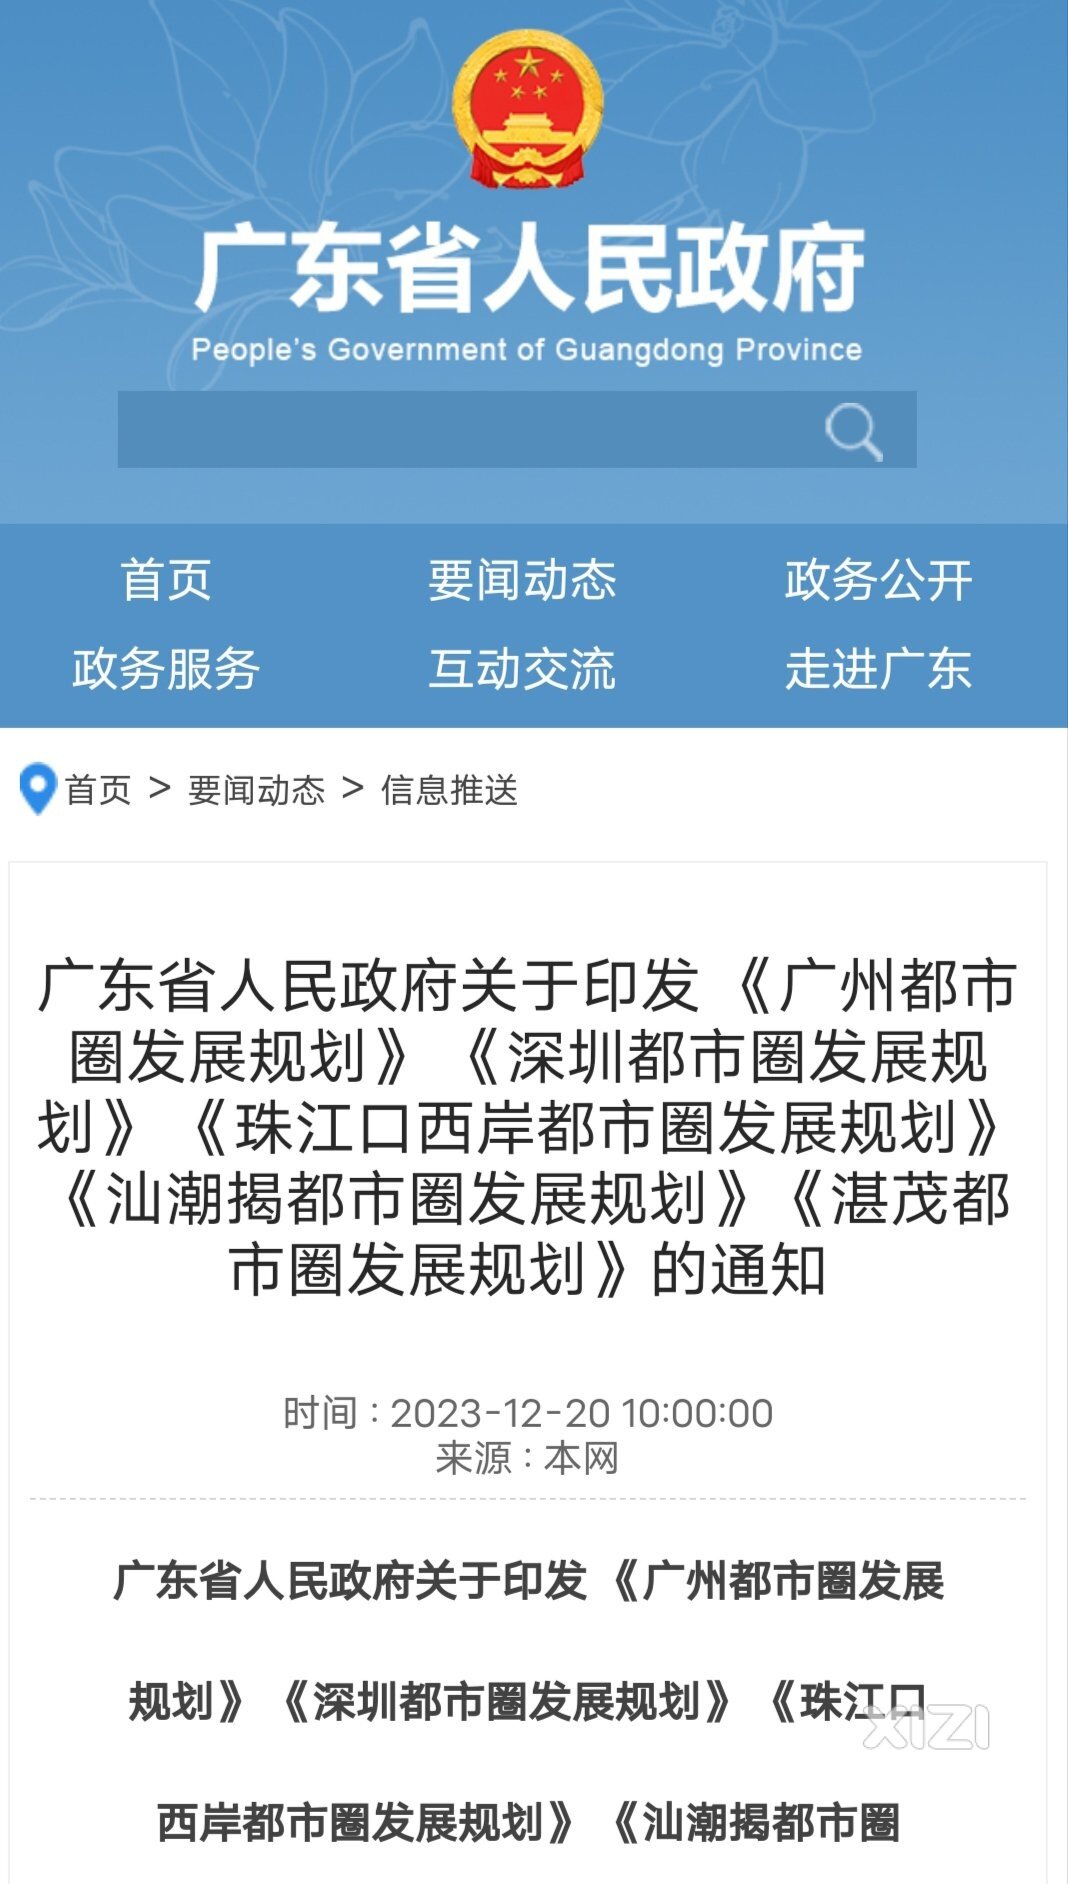 深圳都市圈正式发布。除了龙岗帮扶。惠东还有很多机会。